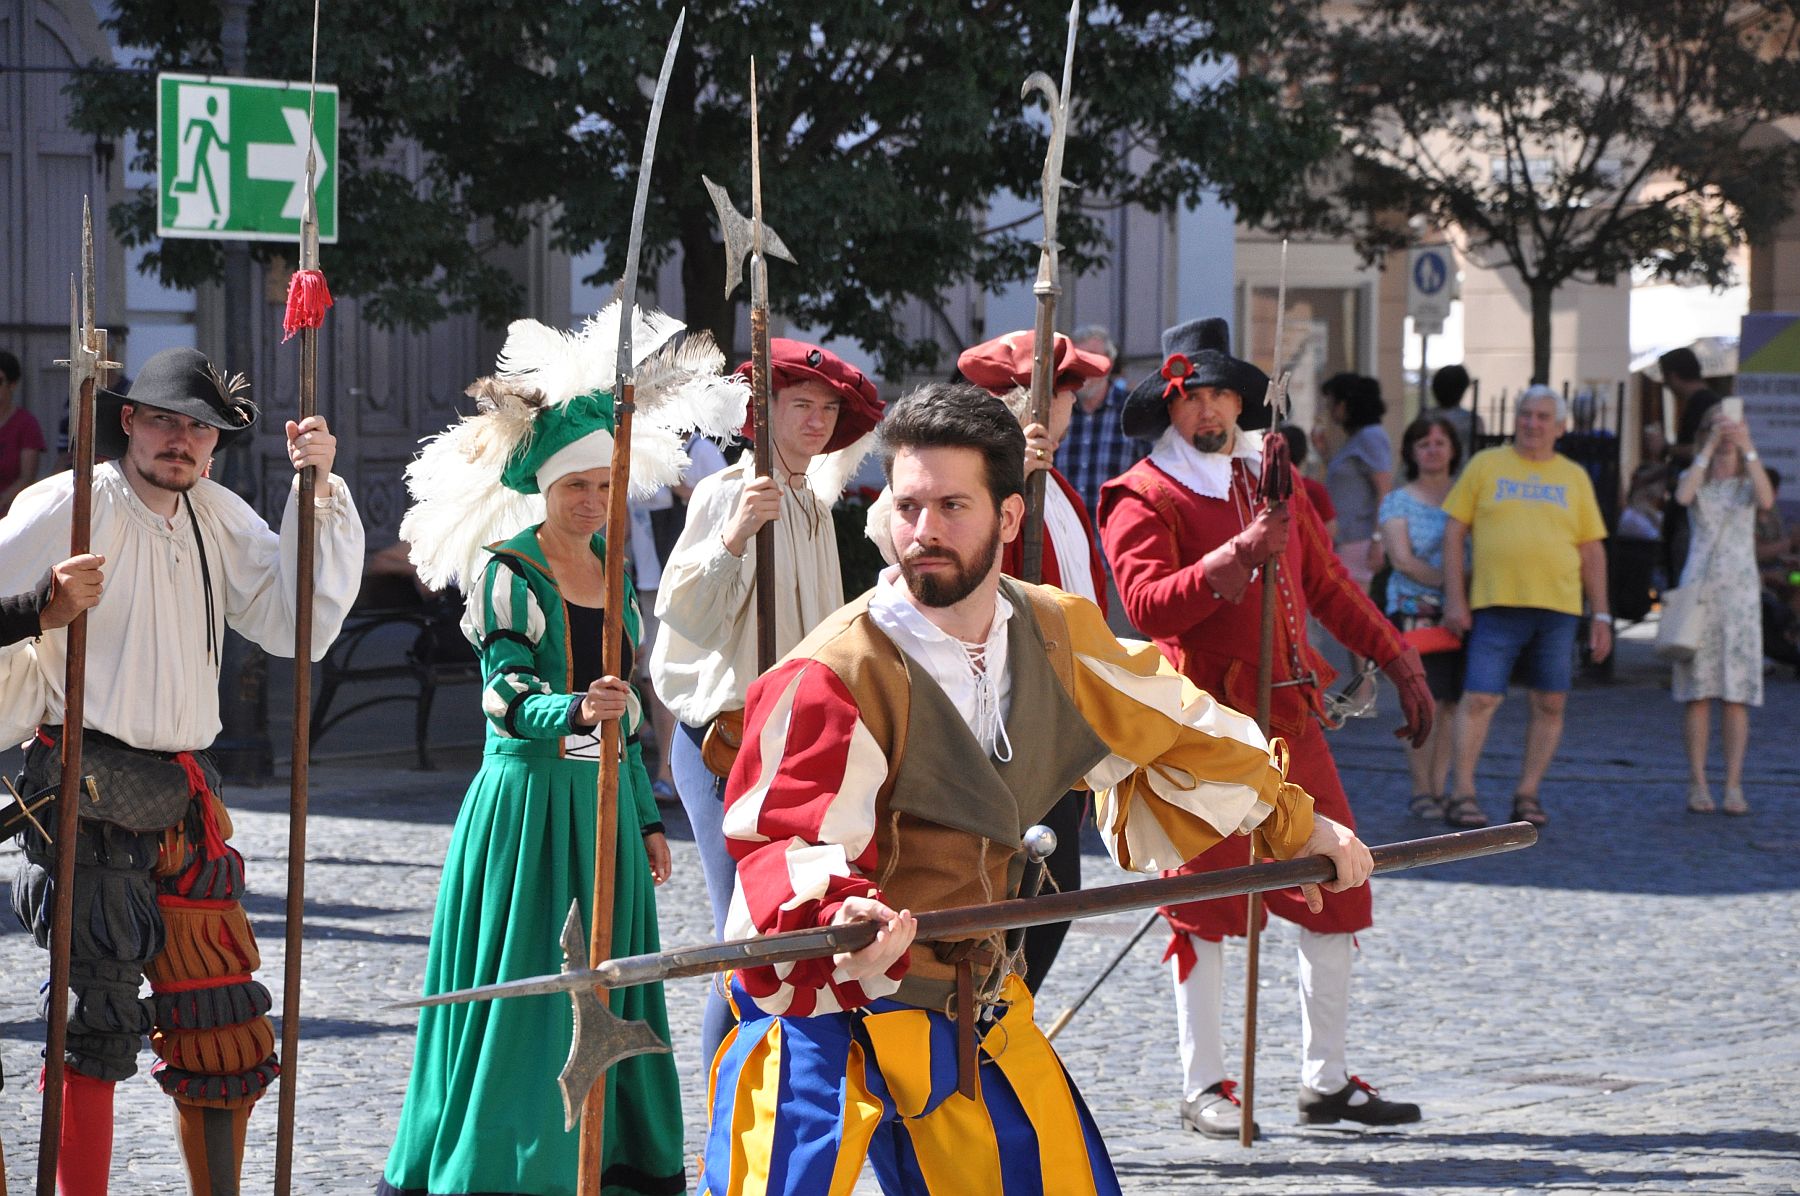 A Palotai kapu őrzői - harci bemutatókkal várta a közönséget az I. András Király Lovagrend